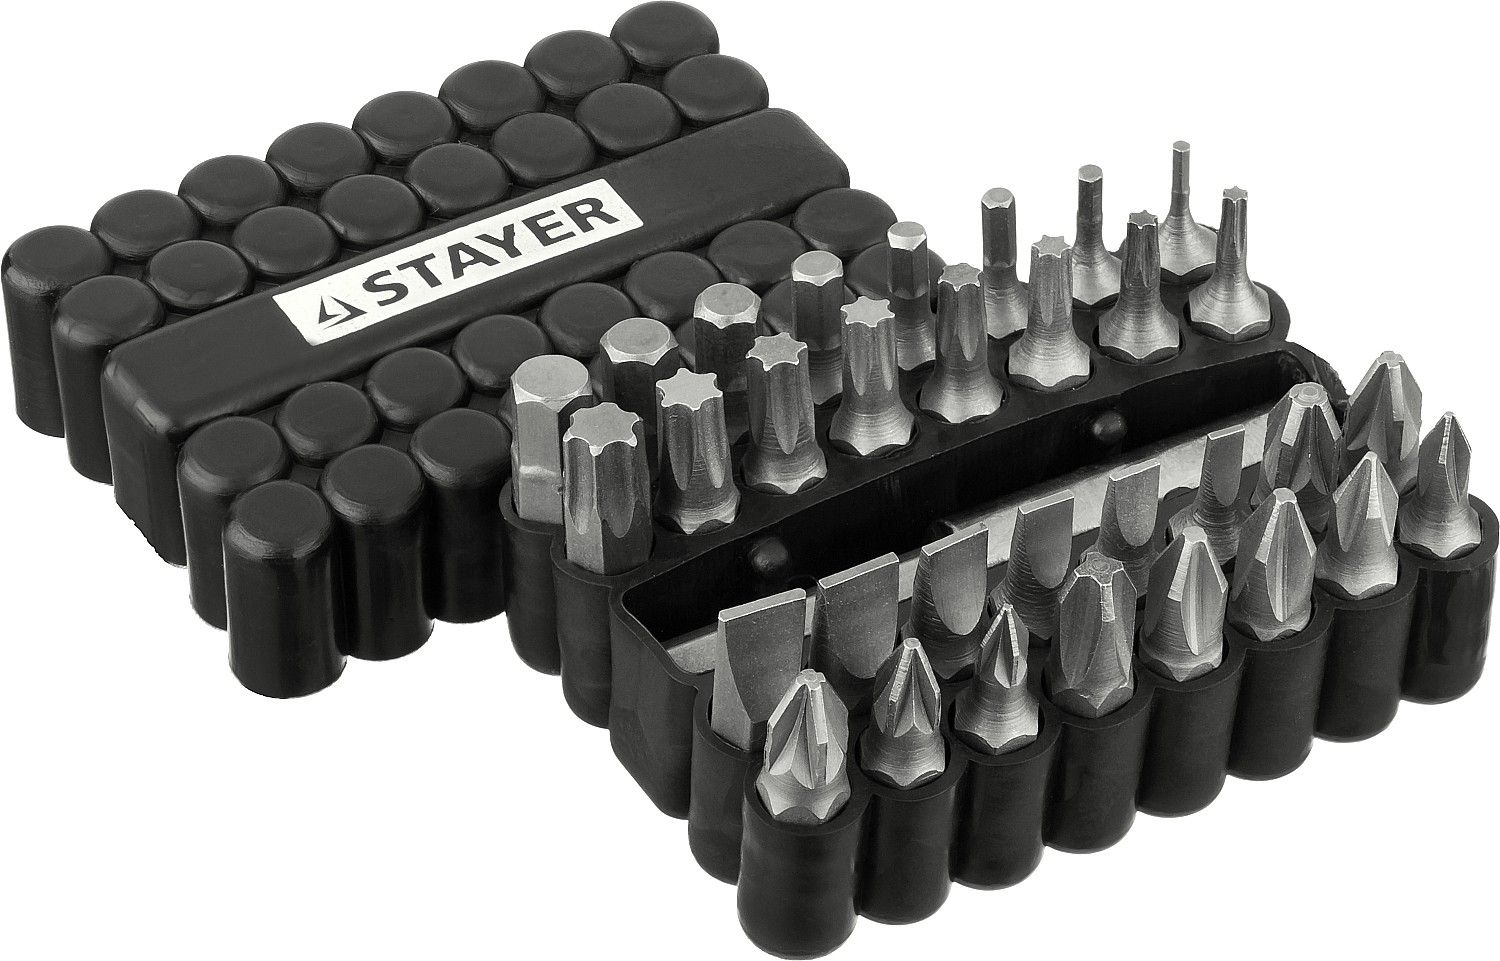 Набор бит Cr-V, с магнитным адаптером, в ударопрочном держателе, 33 предмета STAYER "MASTER"